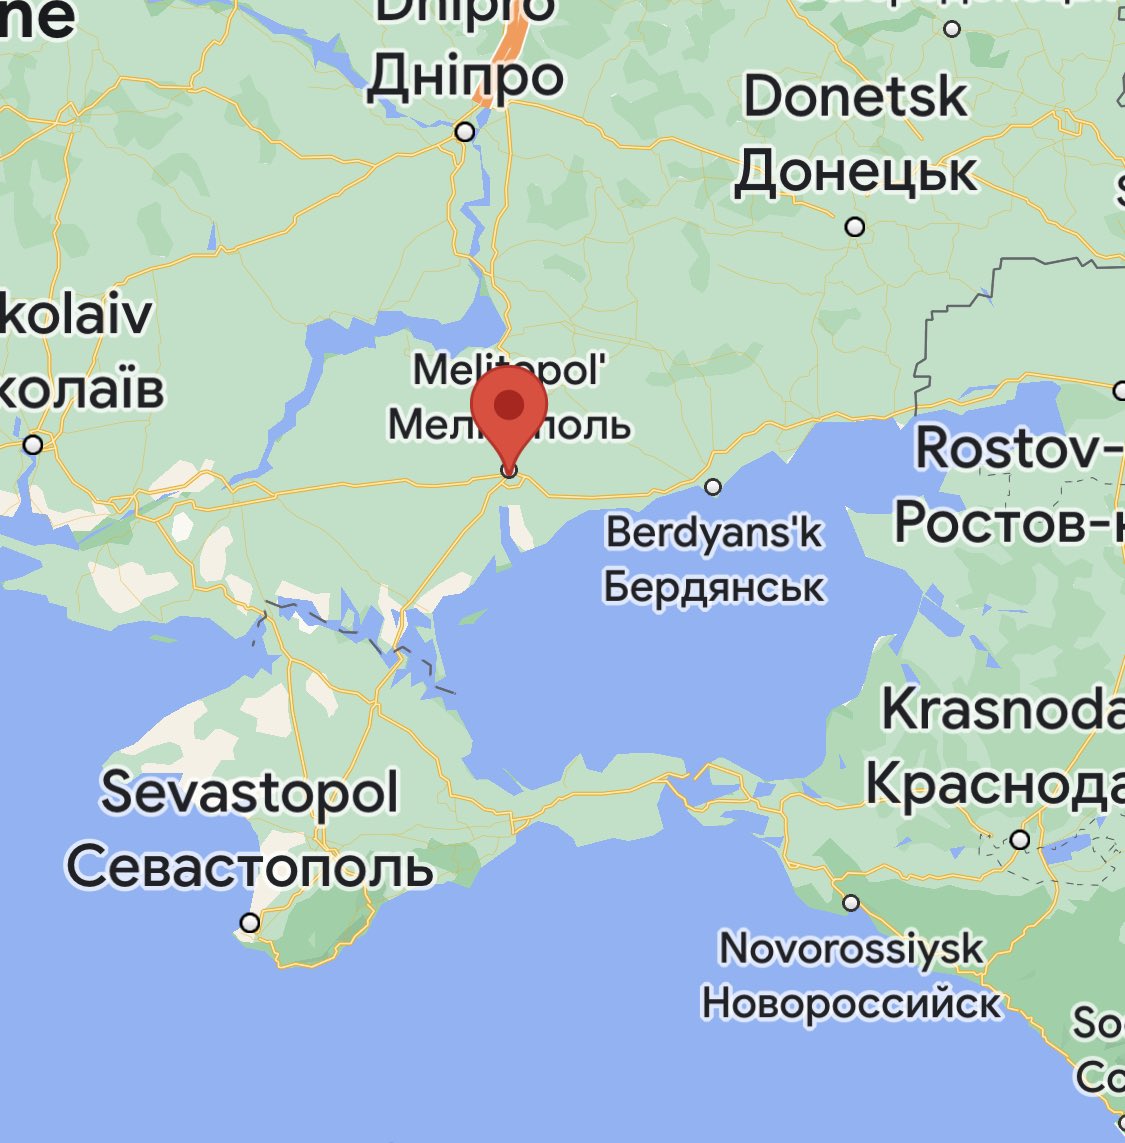 Мелитополь где на карте. Мелитополь на карте. Мелитополь какая область. Где находится Мелитополь. Мелитополь какая область Украины.